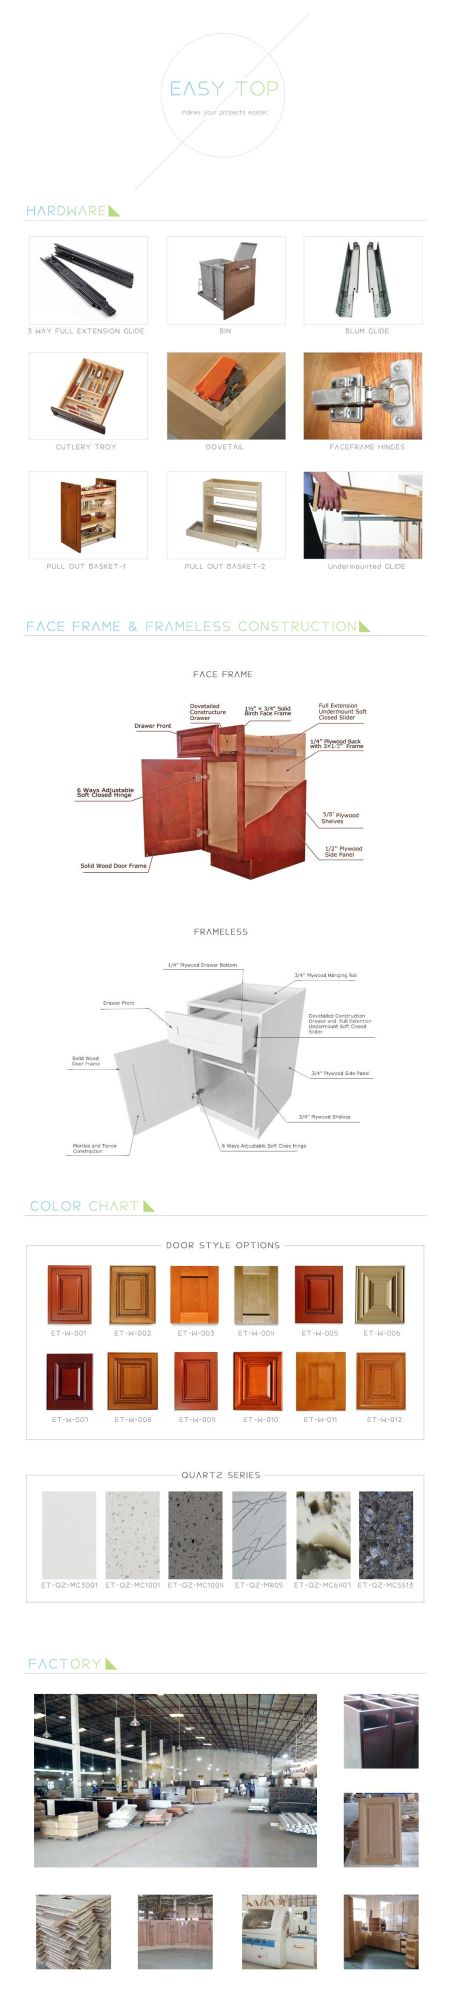 European Cabinets Design Shaker Modern Wooden Kitchen Furniture